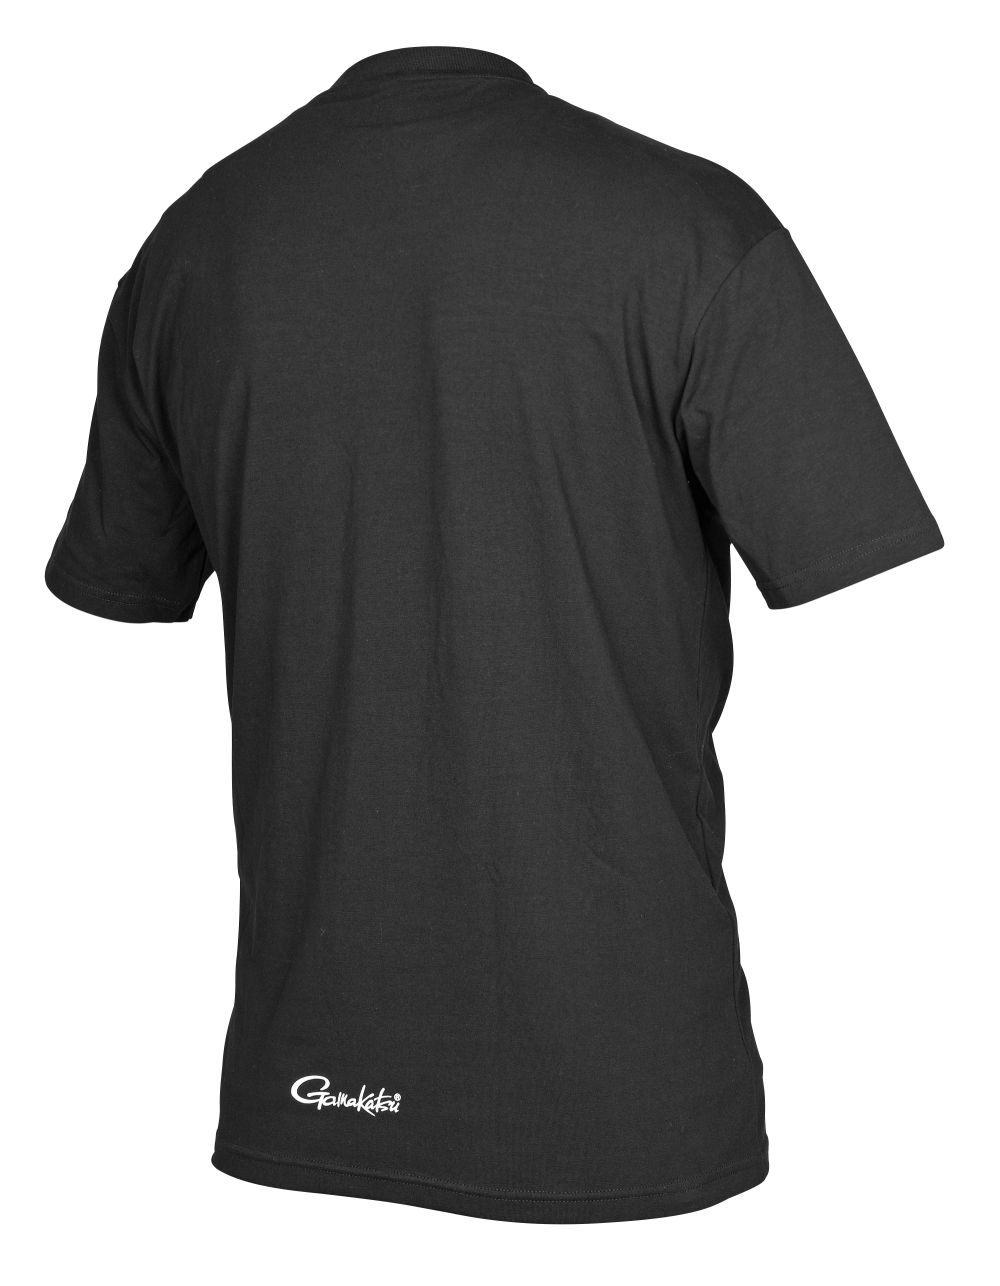 Gamakatsu T-Shirt Worm 330 Black